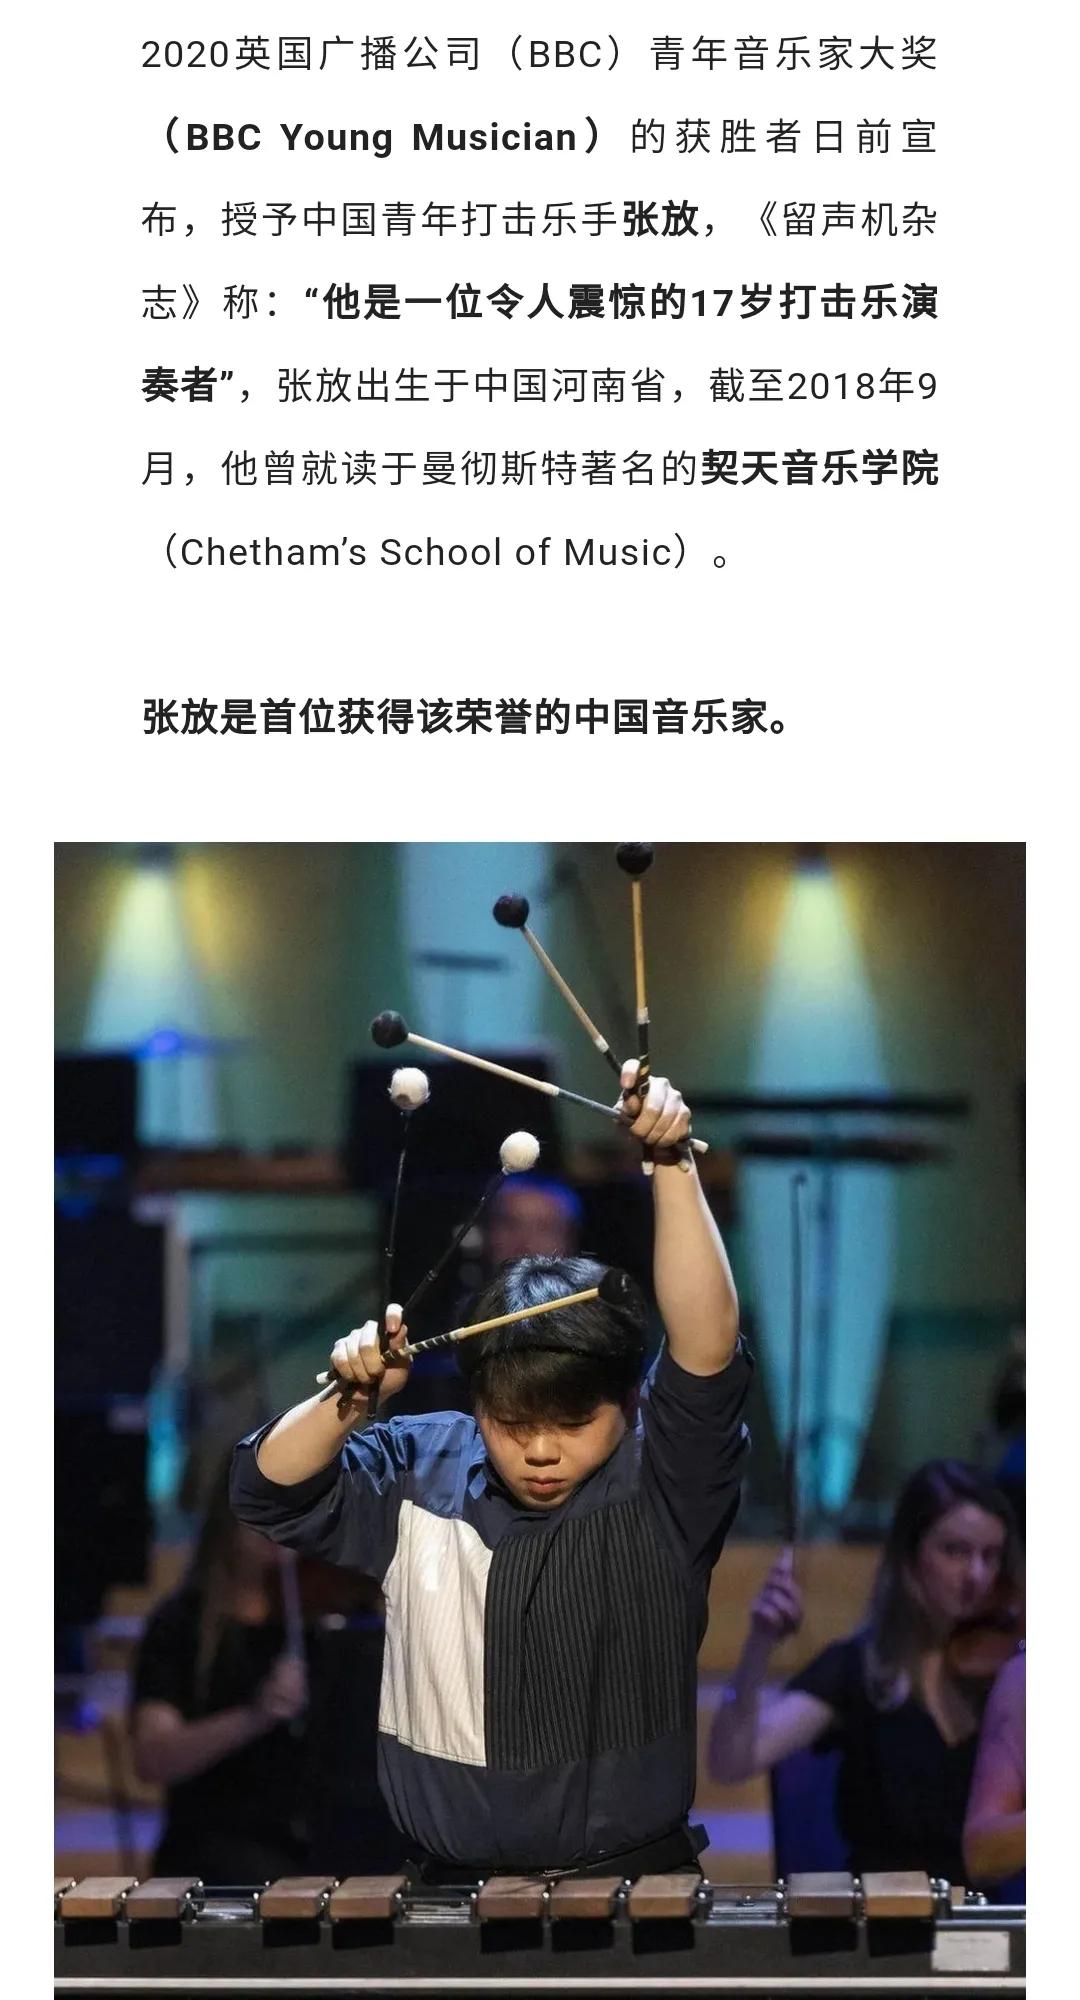 4月14日下午,世界bbc打击乐冠军张放受叶县中等专业学校,叶县融通实验